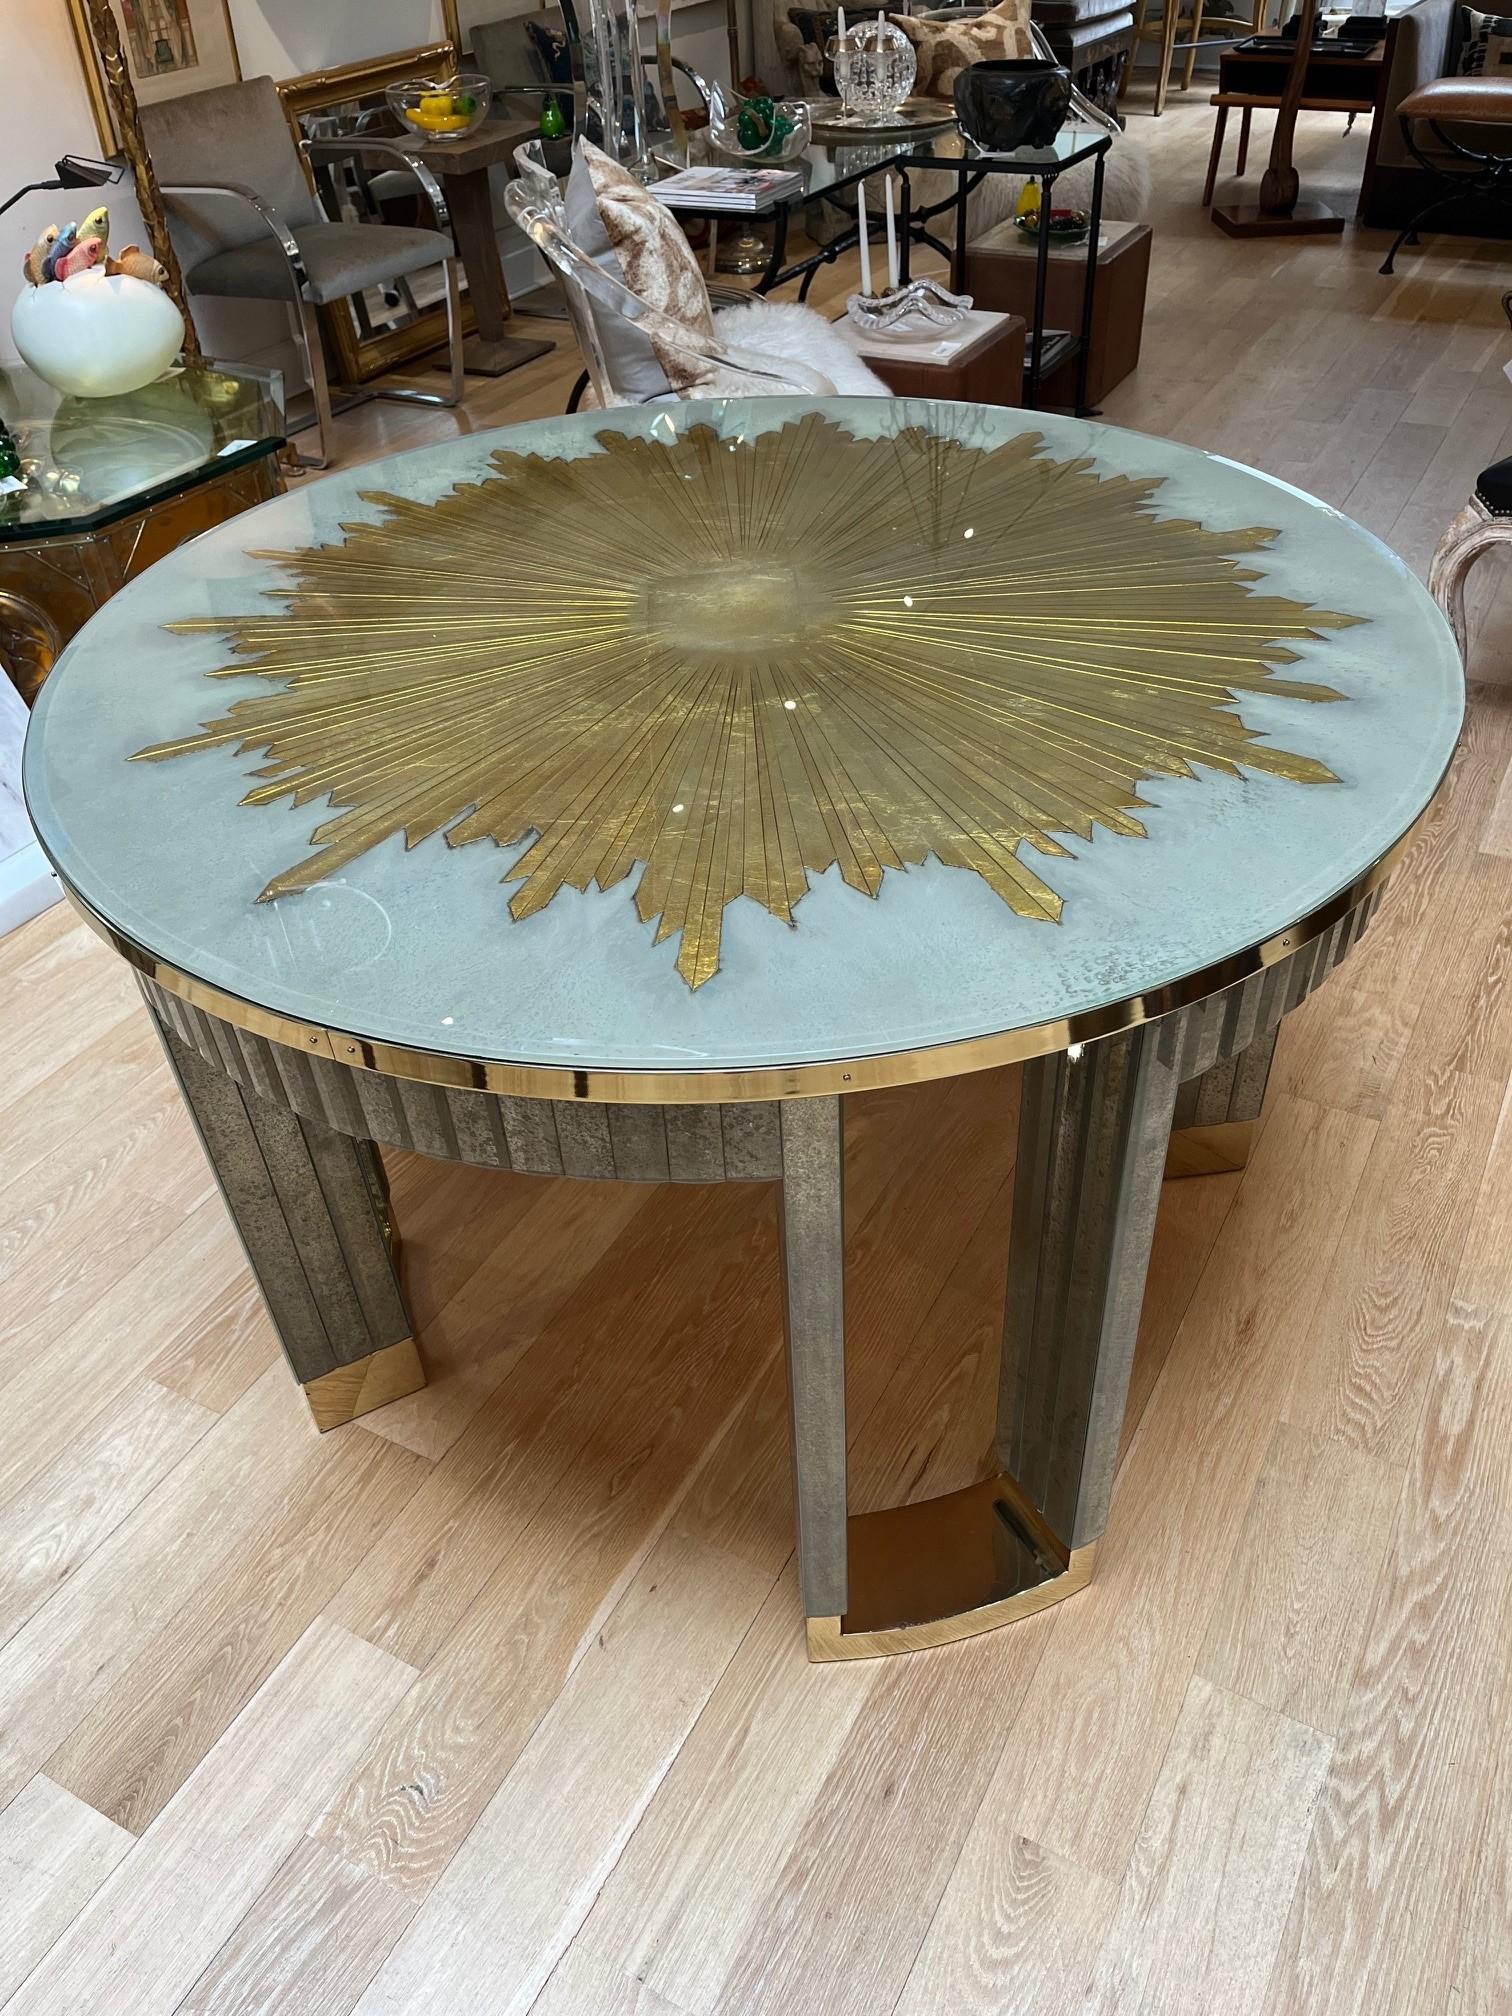 Table centrale pittoresque en miroir avec étoile gravée et dorée, biseautée et amovible, avec plateau en bois incrusté en dessous, modèle de salle d'exposition.